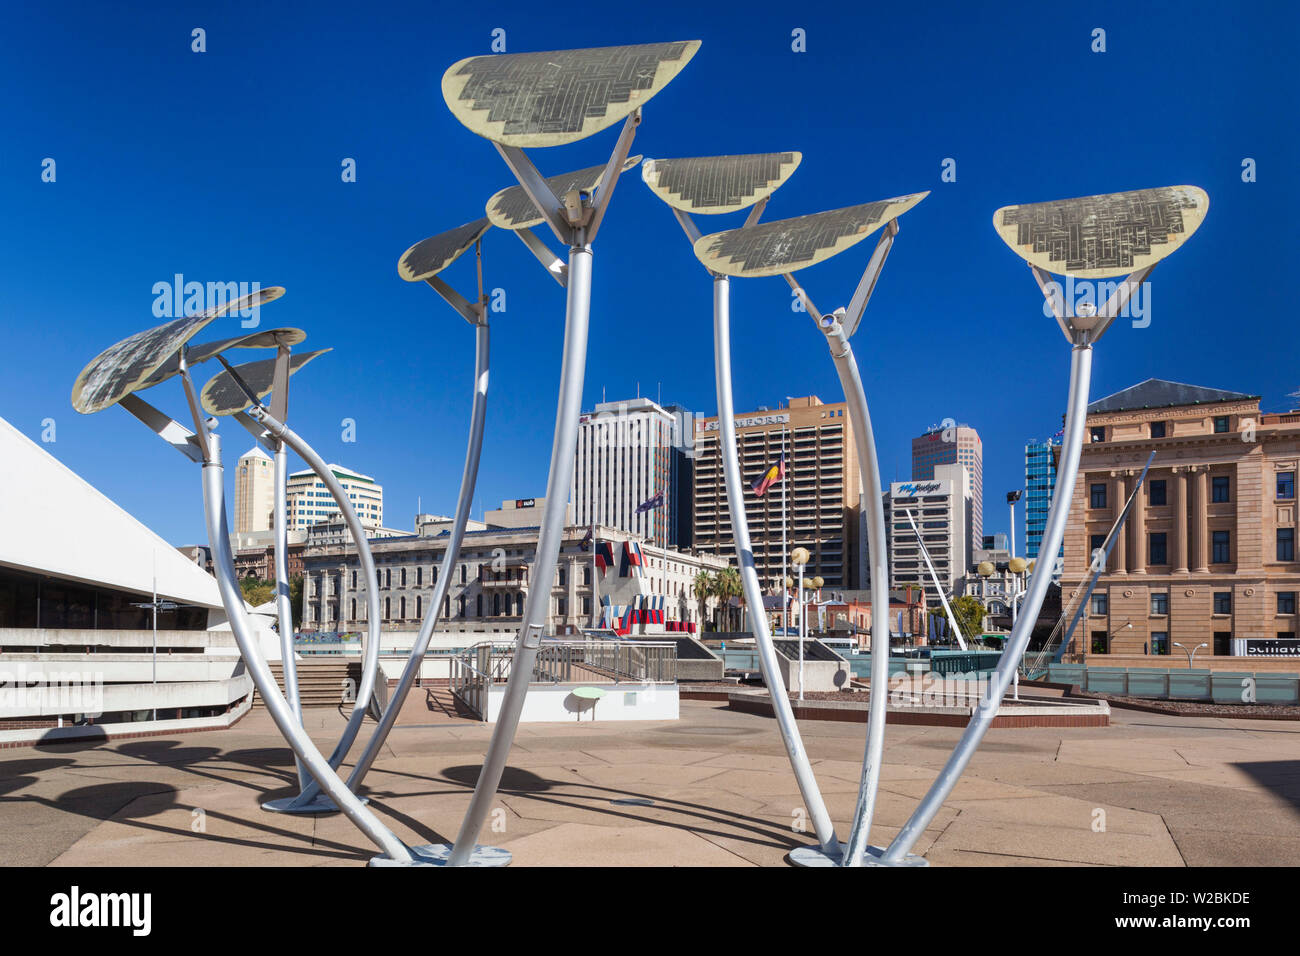 Australien, South Australia, Adelaide, Adelaide Festival Centre, Solar - Straßenbeleuchtung eingeschaltet Stockfoto